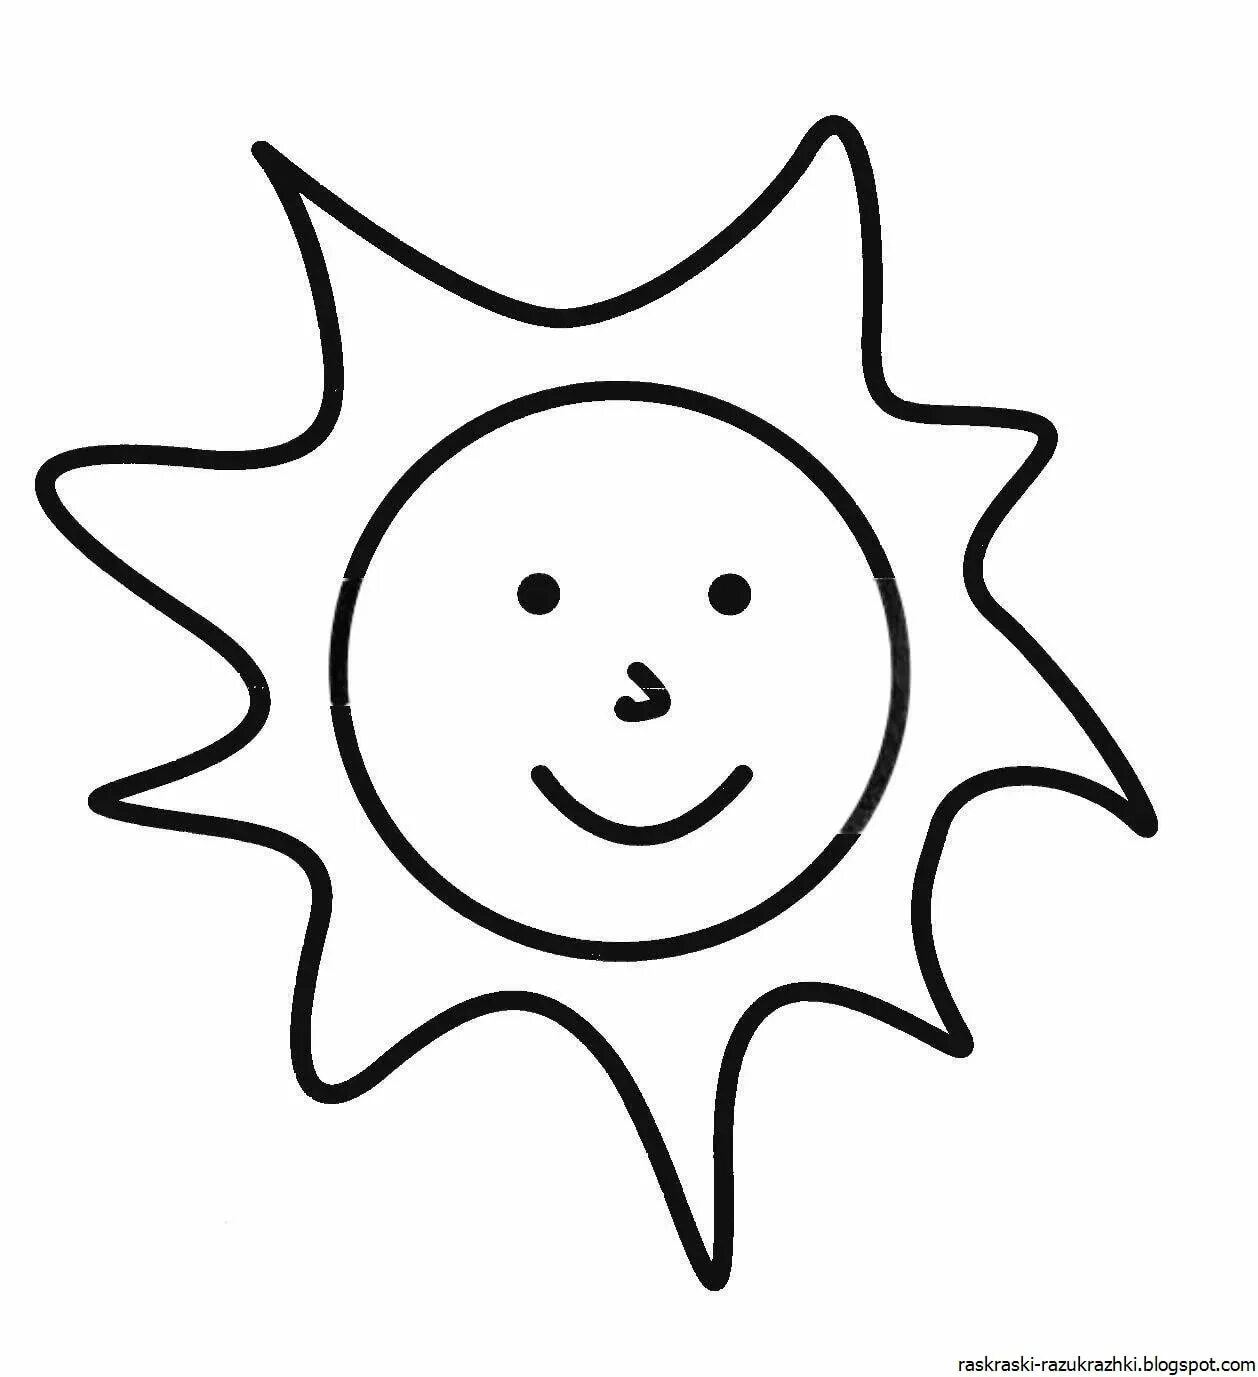 Солнышко раскраска для детей. Солнце раскраска. Простые раскраски для малышей. Солнце трафарет. Раскраски для детей 3 лет солнышко